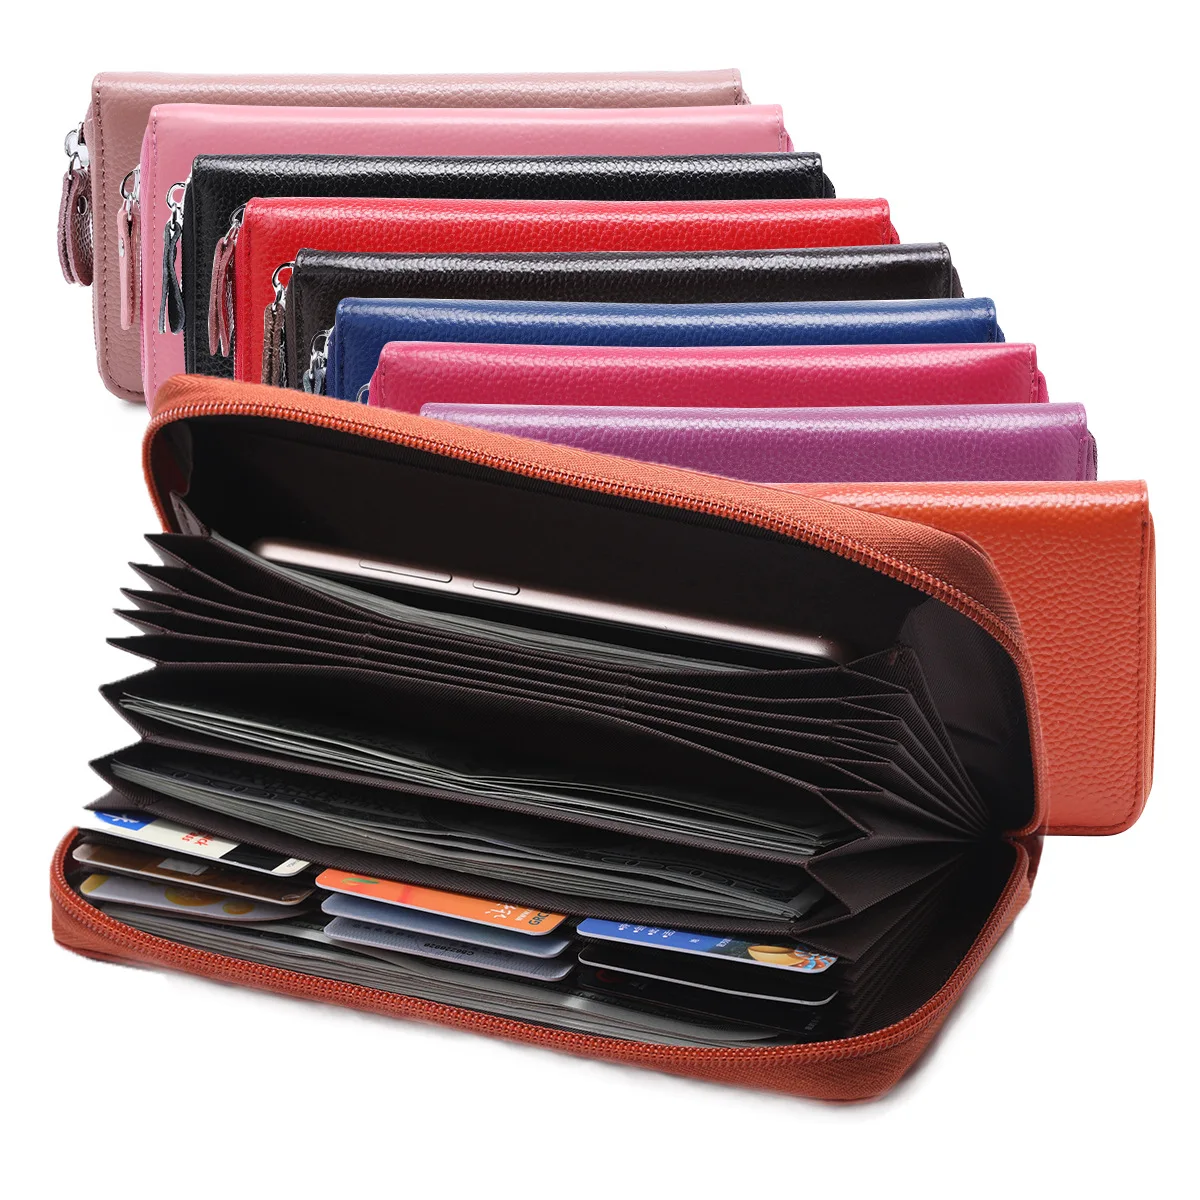 2019 billeteras grandes para mujeres de cuero genuino RFID tarjetero largo monedero femenino cremallera mujeres Billeteras|Carteras| - AliExpress